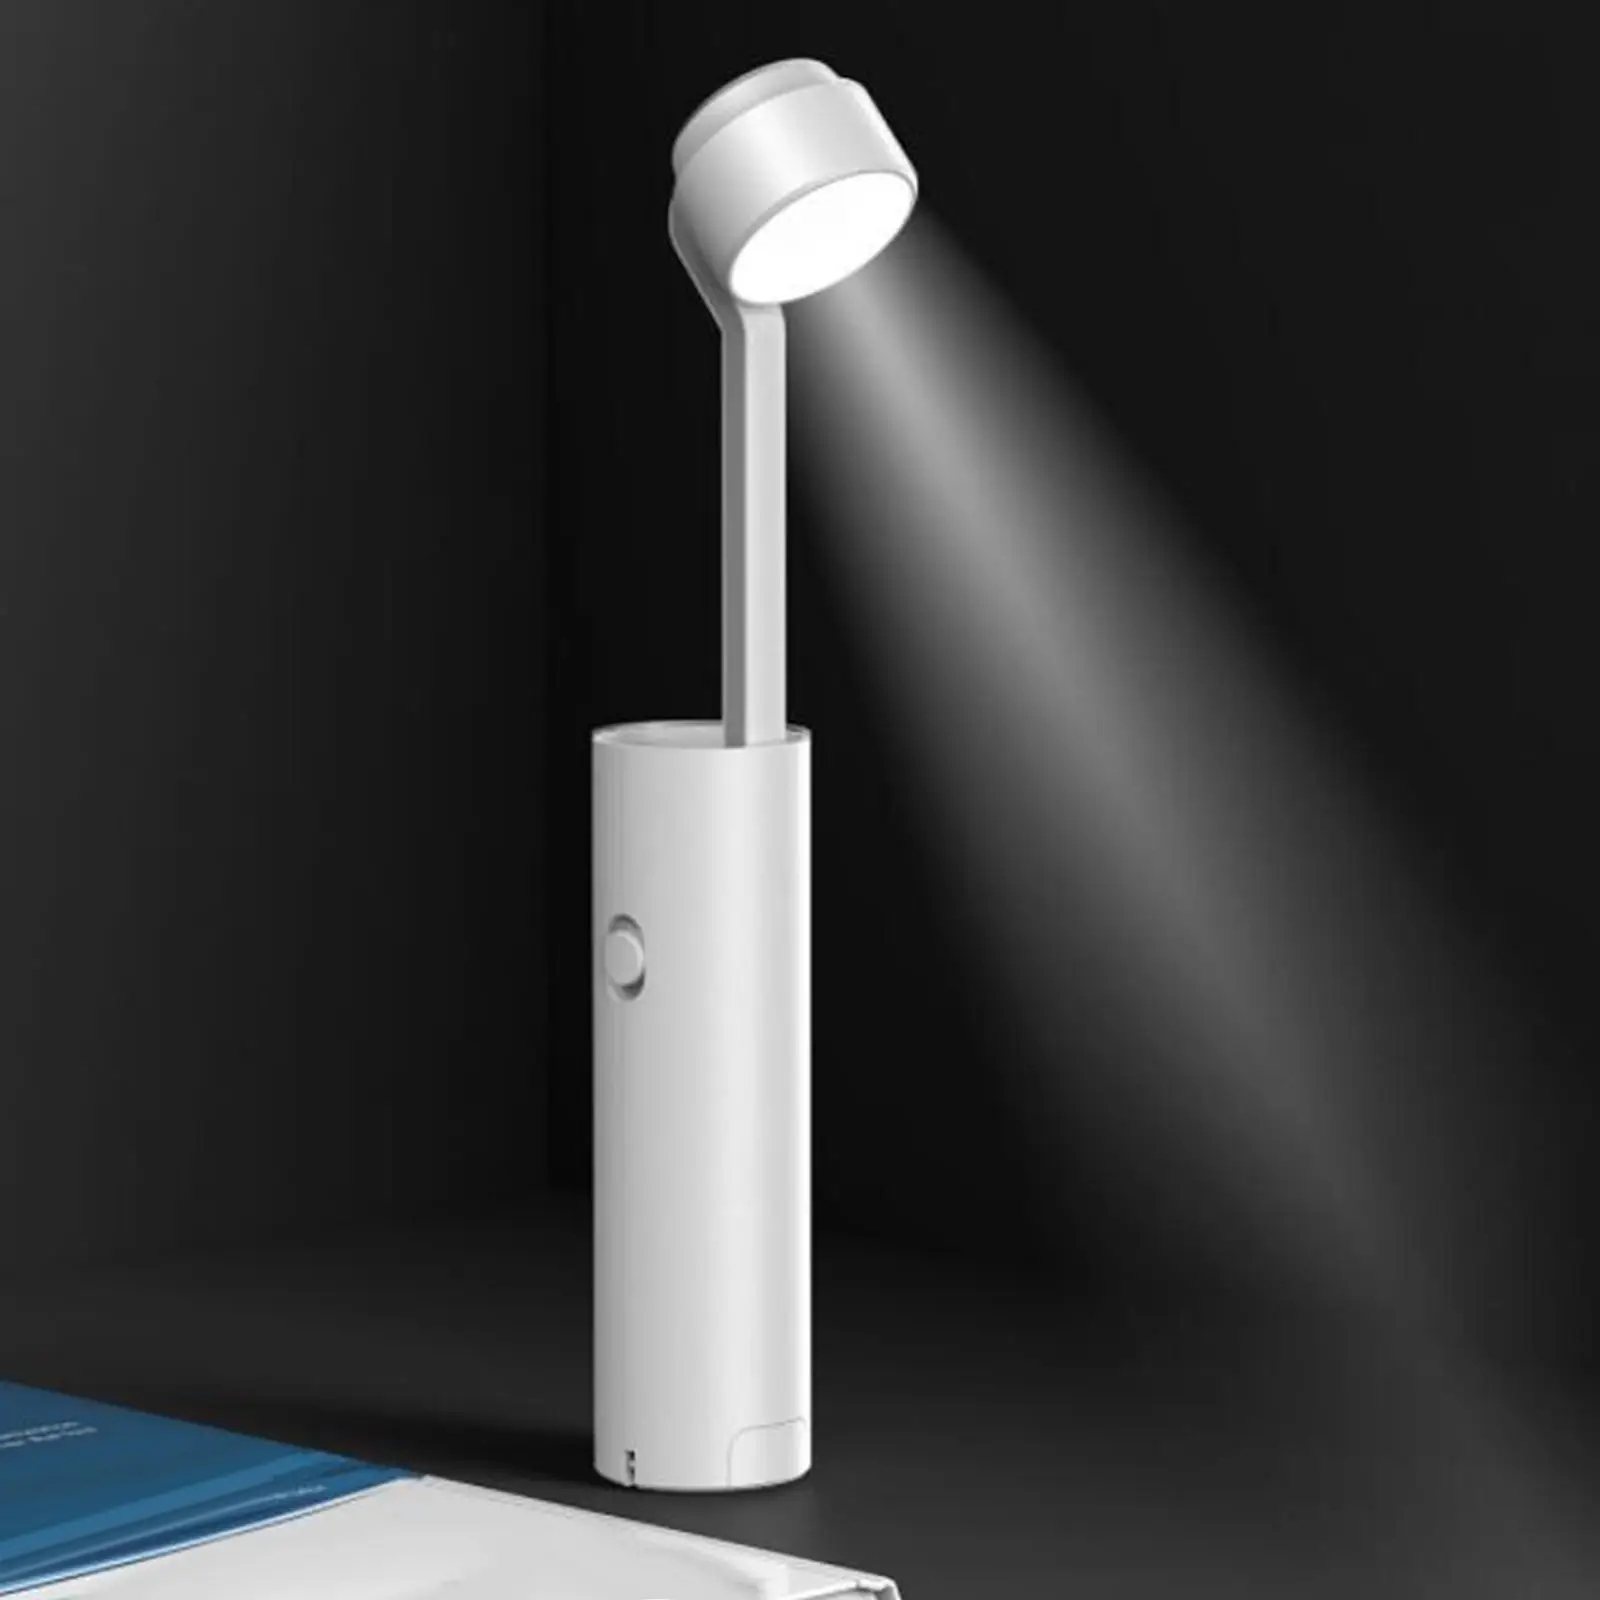 Dimmable LED Desk Lamp Table Light Eye Caring for Dorm Study Living Room